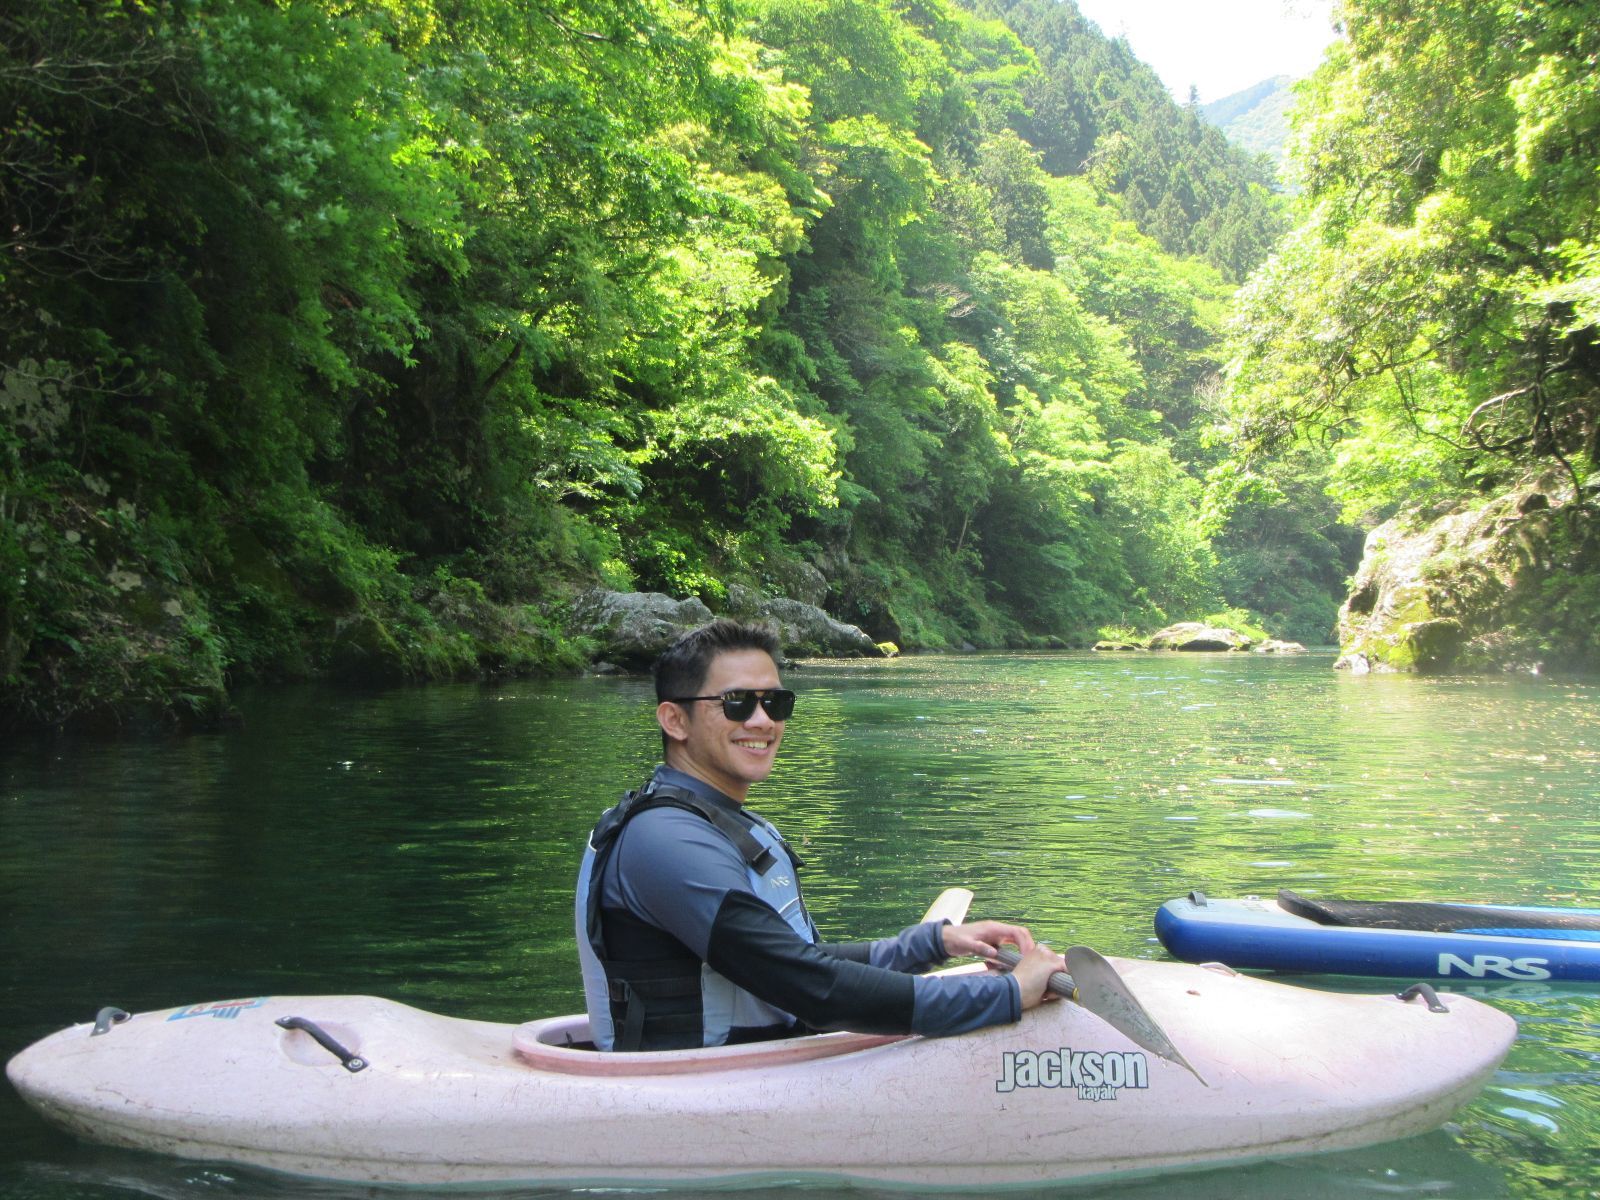 Kayaking in Okutama